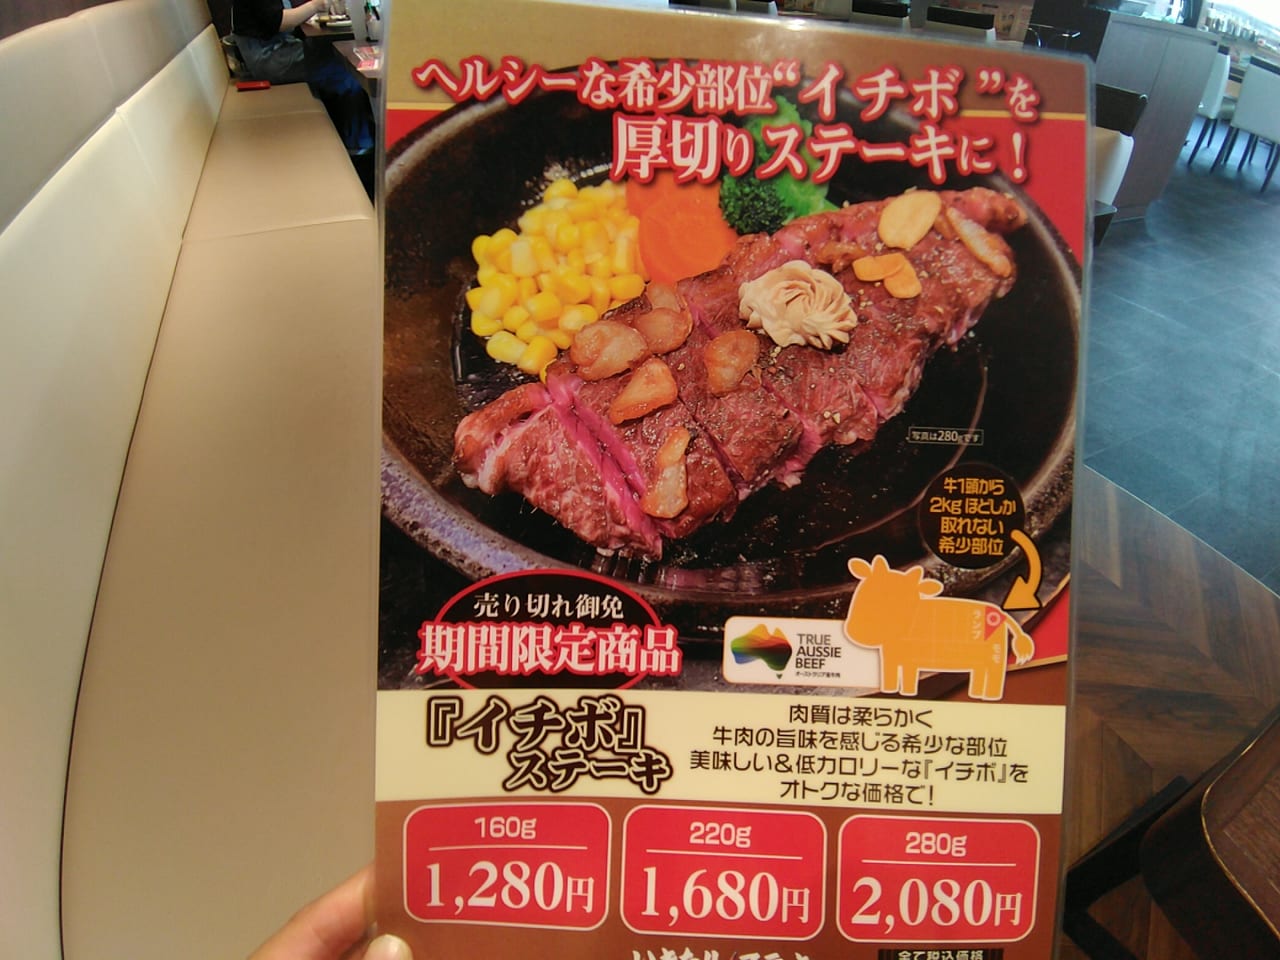 いきなりステーキ『イチボステーキフェア』